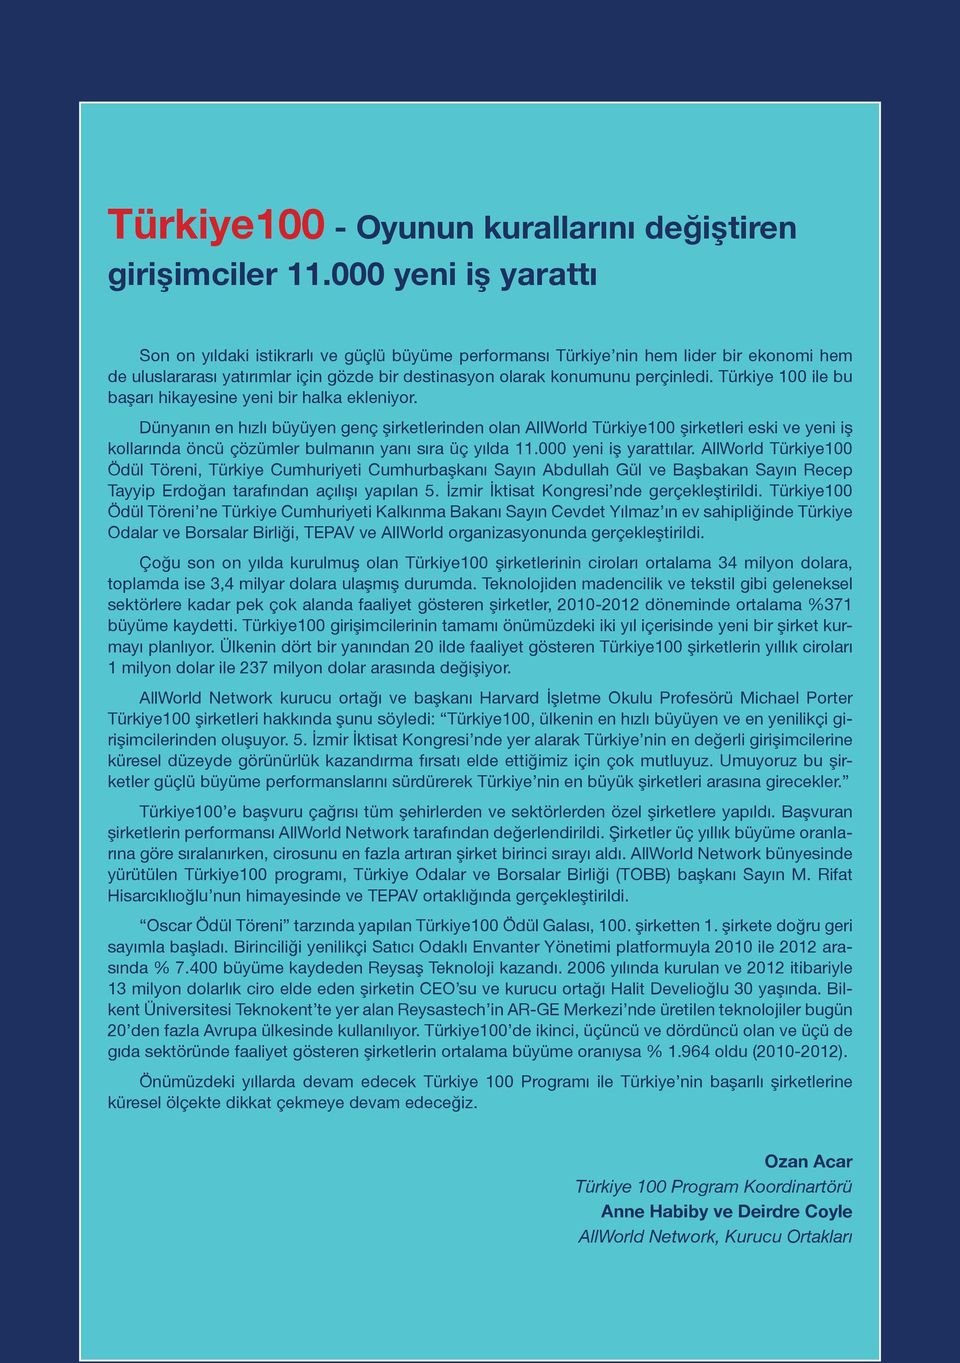 Türkiye 100 ile bu başarı hikayesine yeni bir halka ekleniyor.